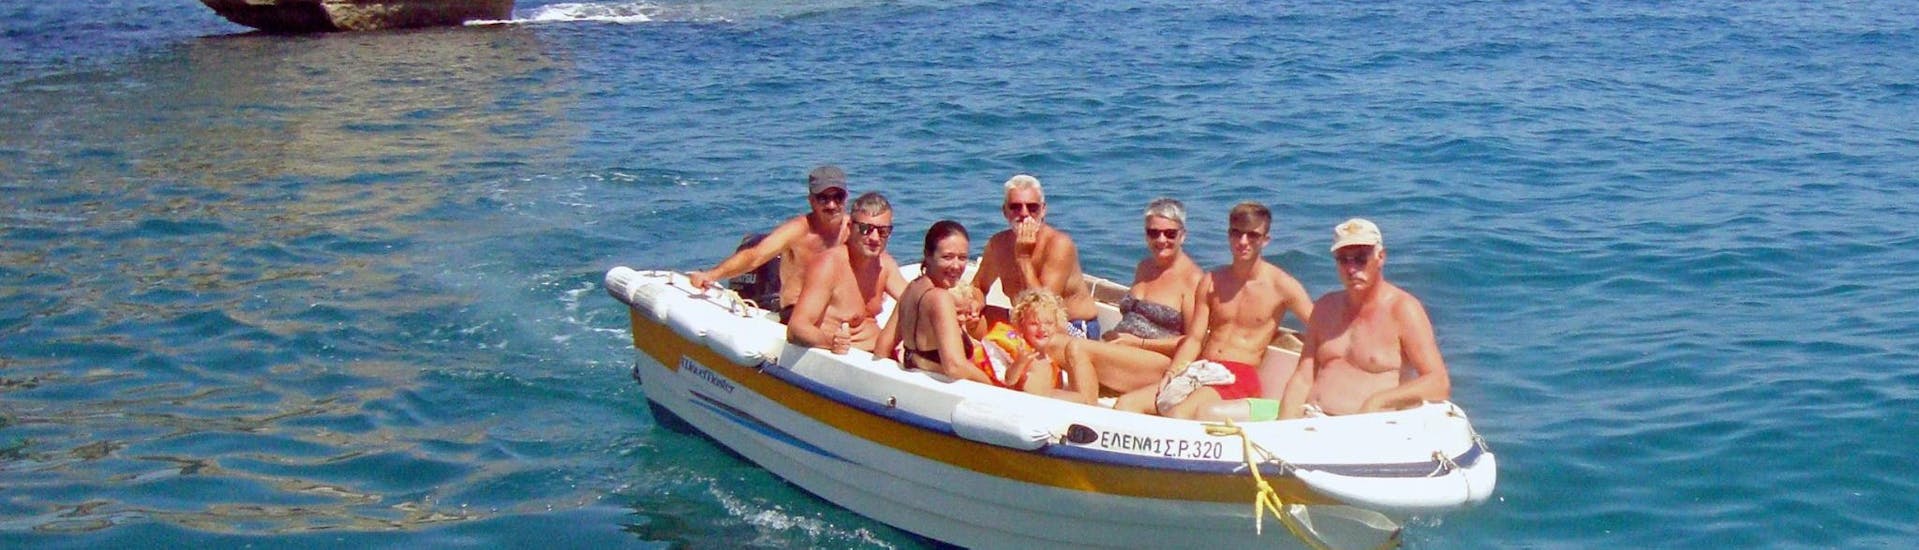 Un groupe d'amis se repose et admire la vue lors de la Location de bateau à Bali (jusqu'à 6 personnes) sans Permis avec The Skippers Bali.